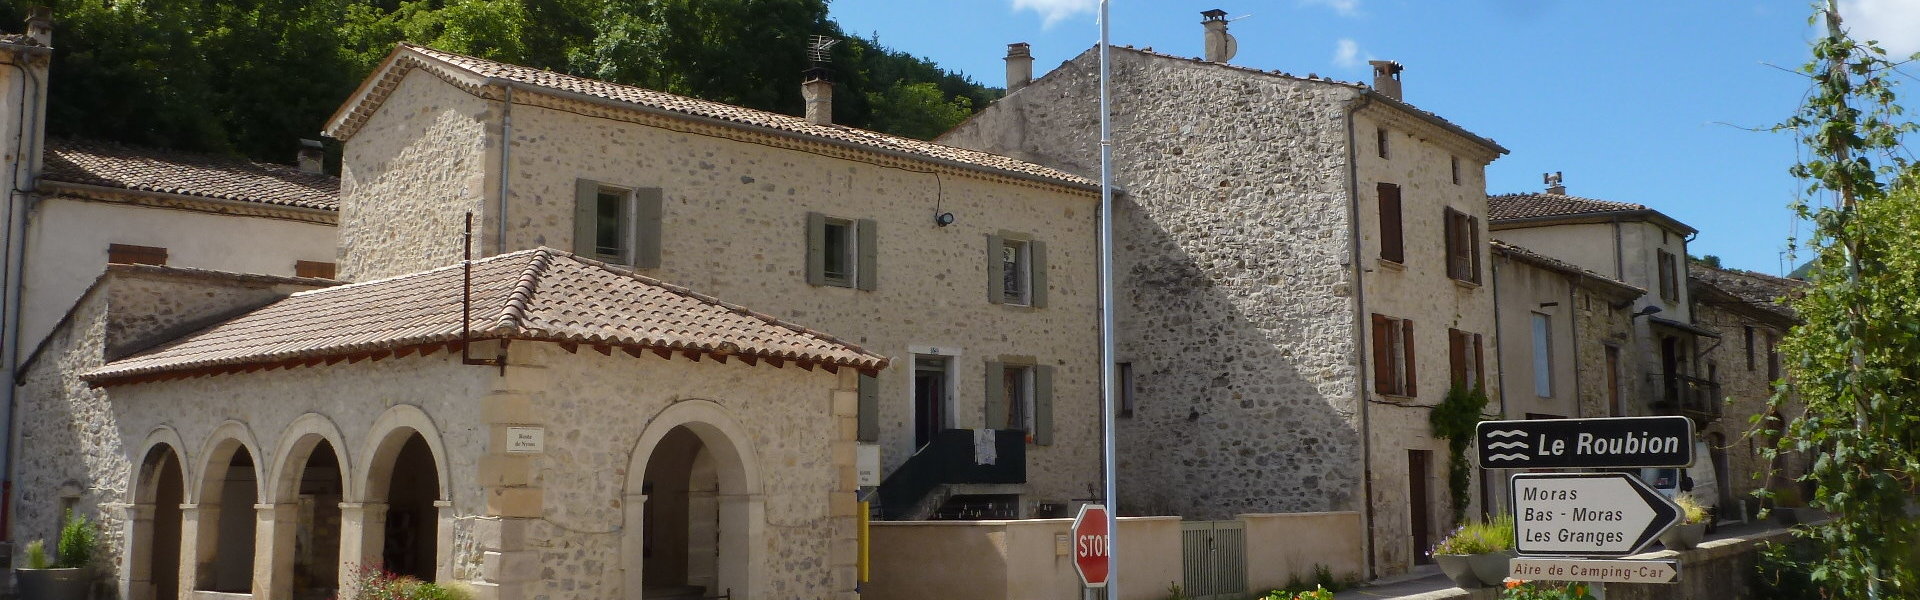 Les associations - Commune de Bouvières - Département de la Drôme